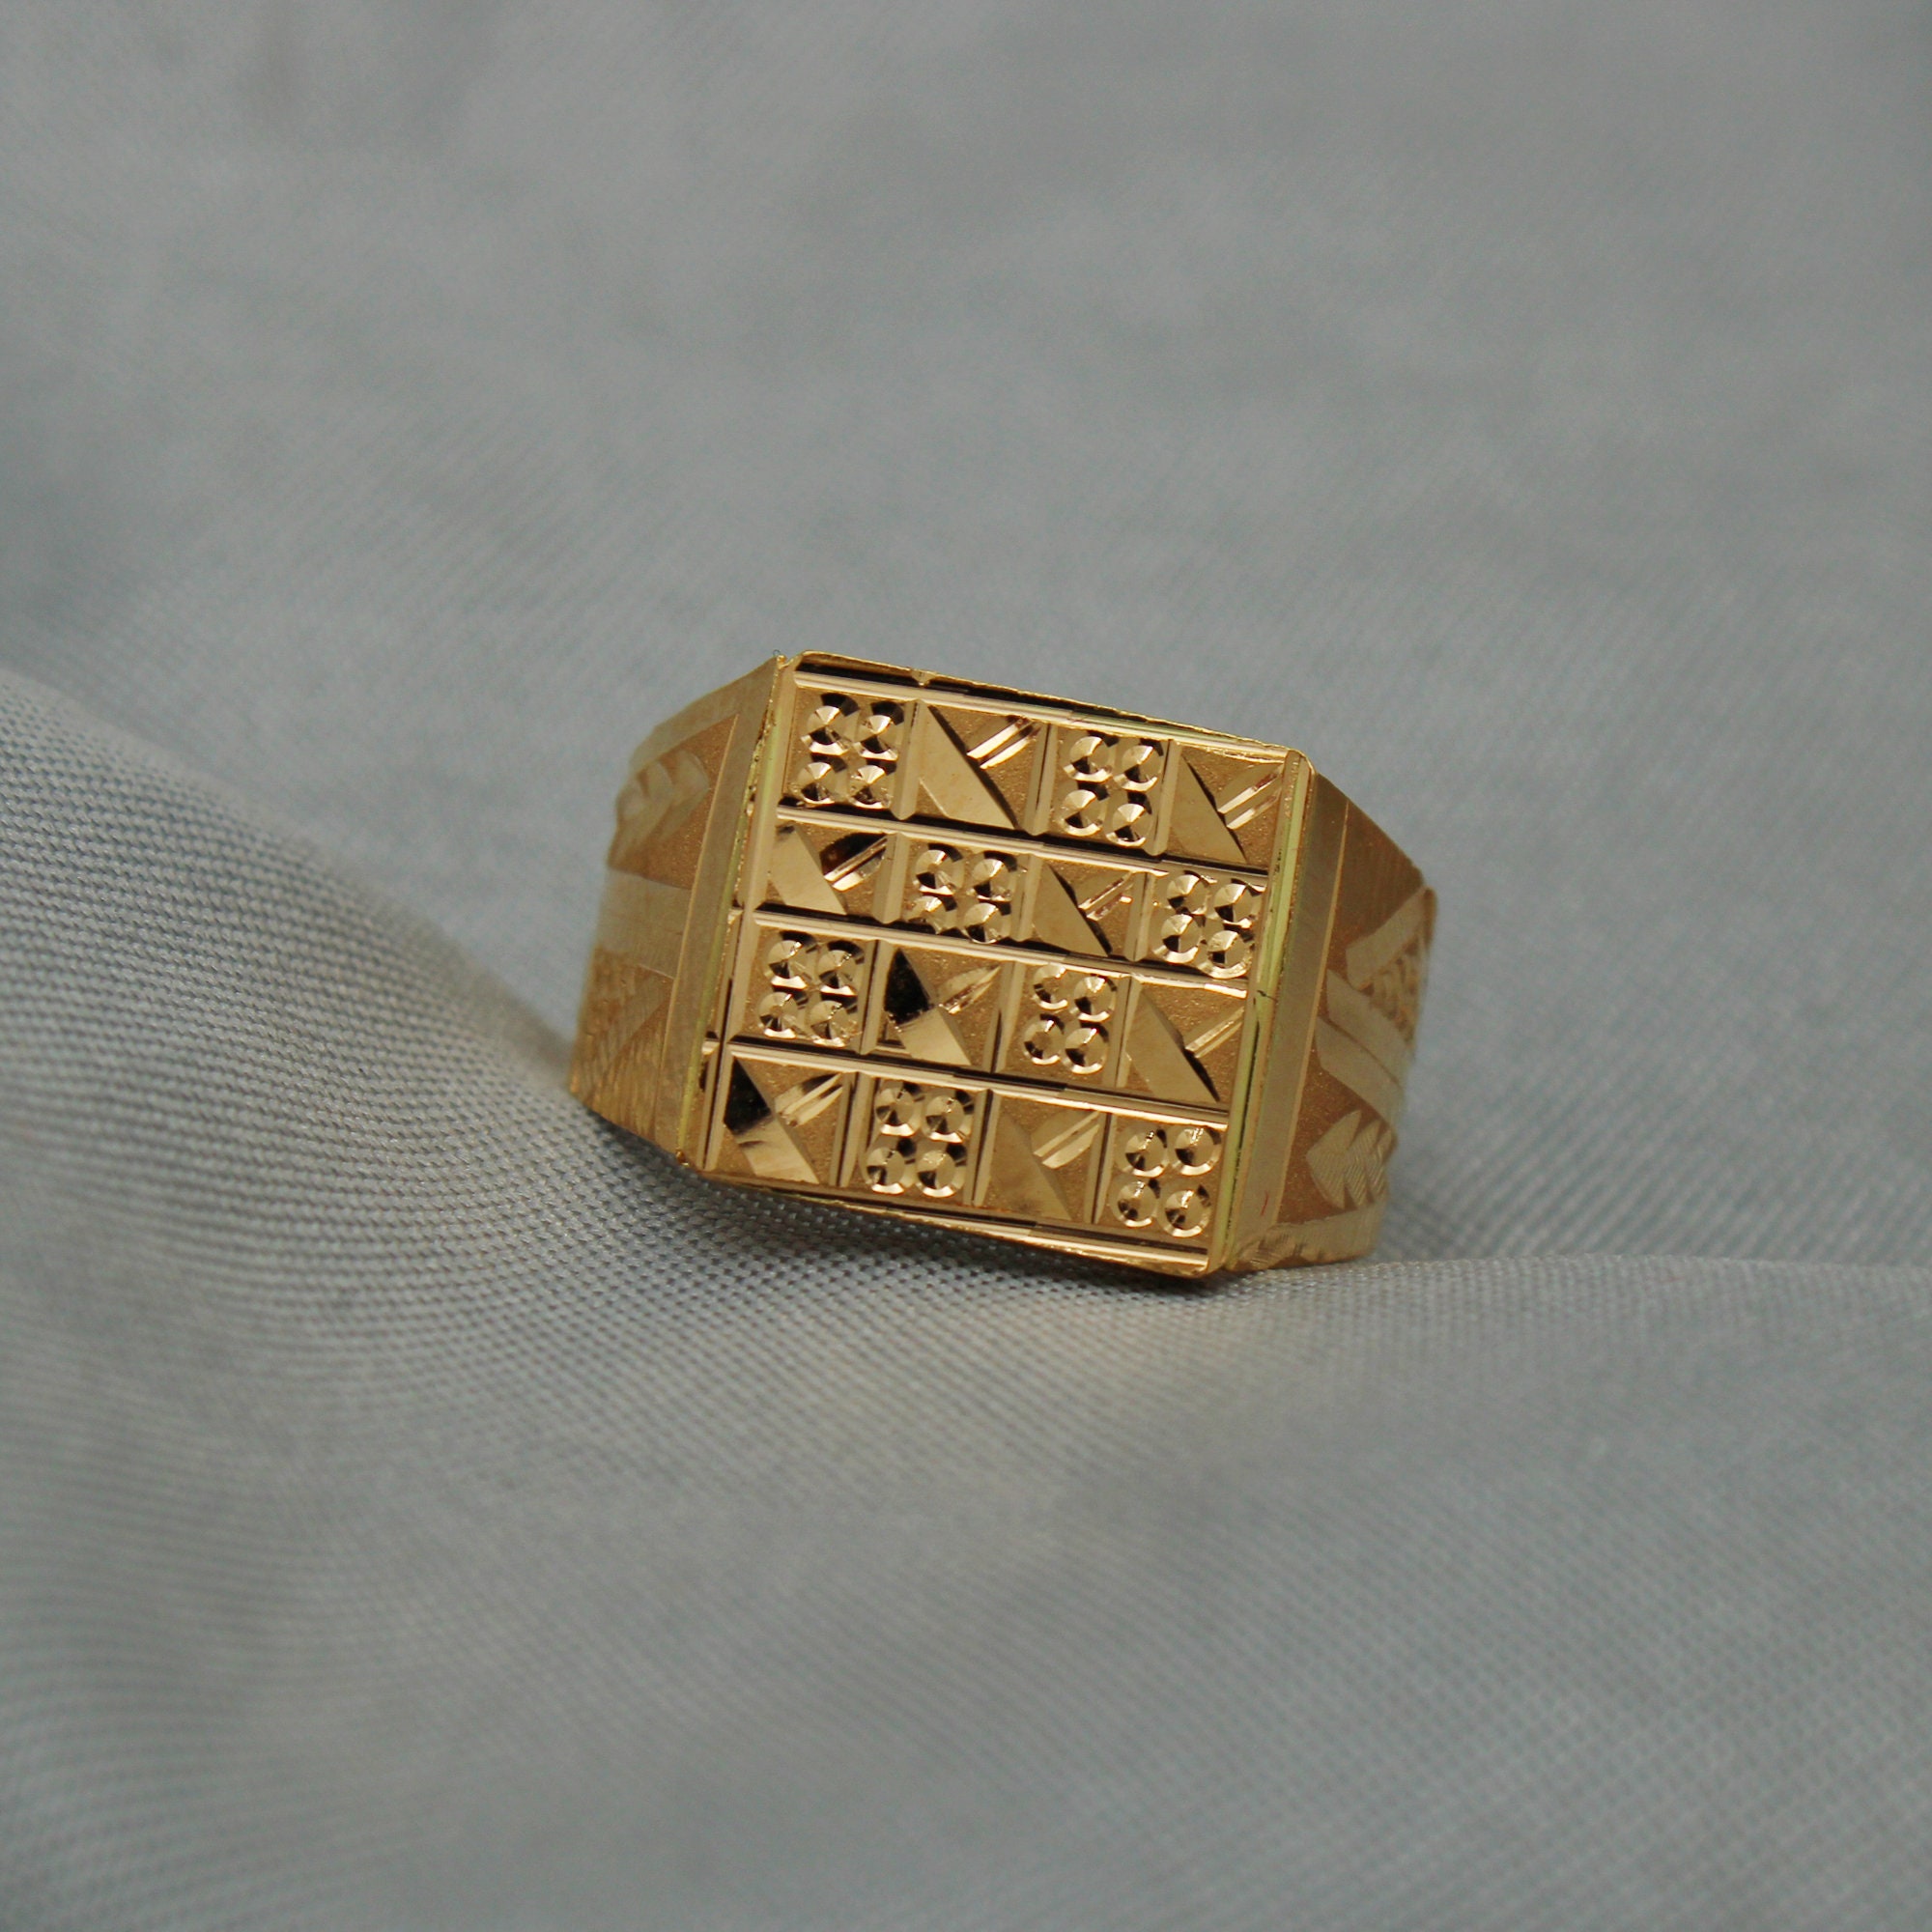 gold ring designs indian Men & Women engagement gold ring designs,gold ring,jewelry,Women  Late… | Antique wedding rings, Gold ring designs, Latest gold ring designs